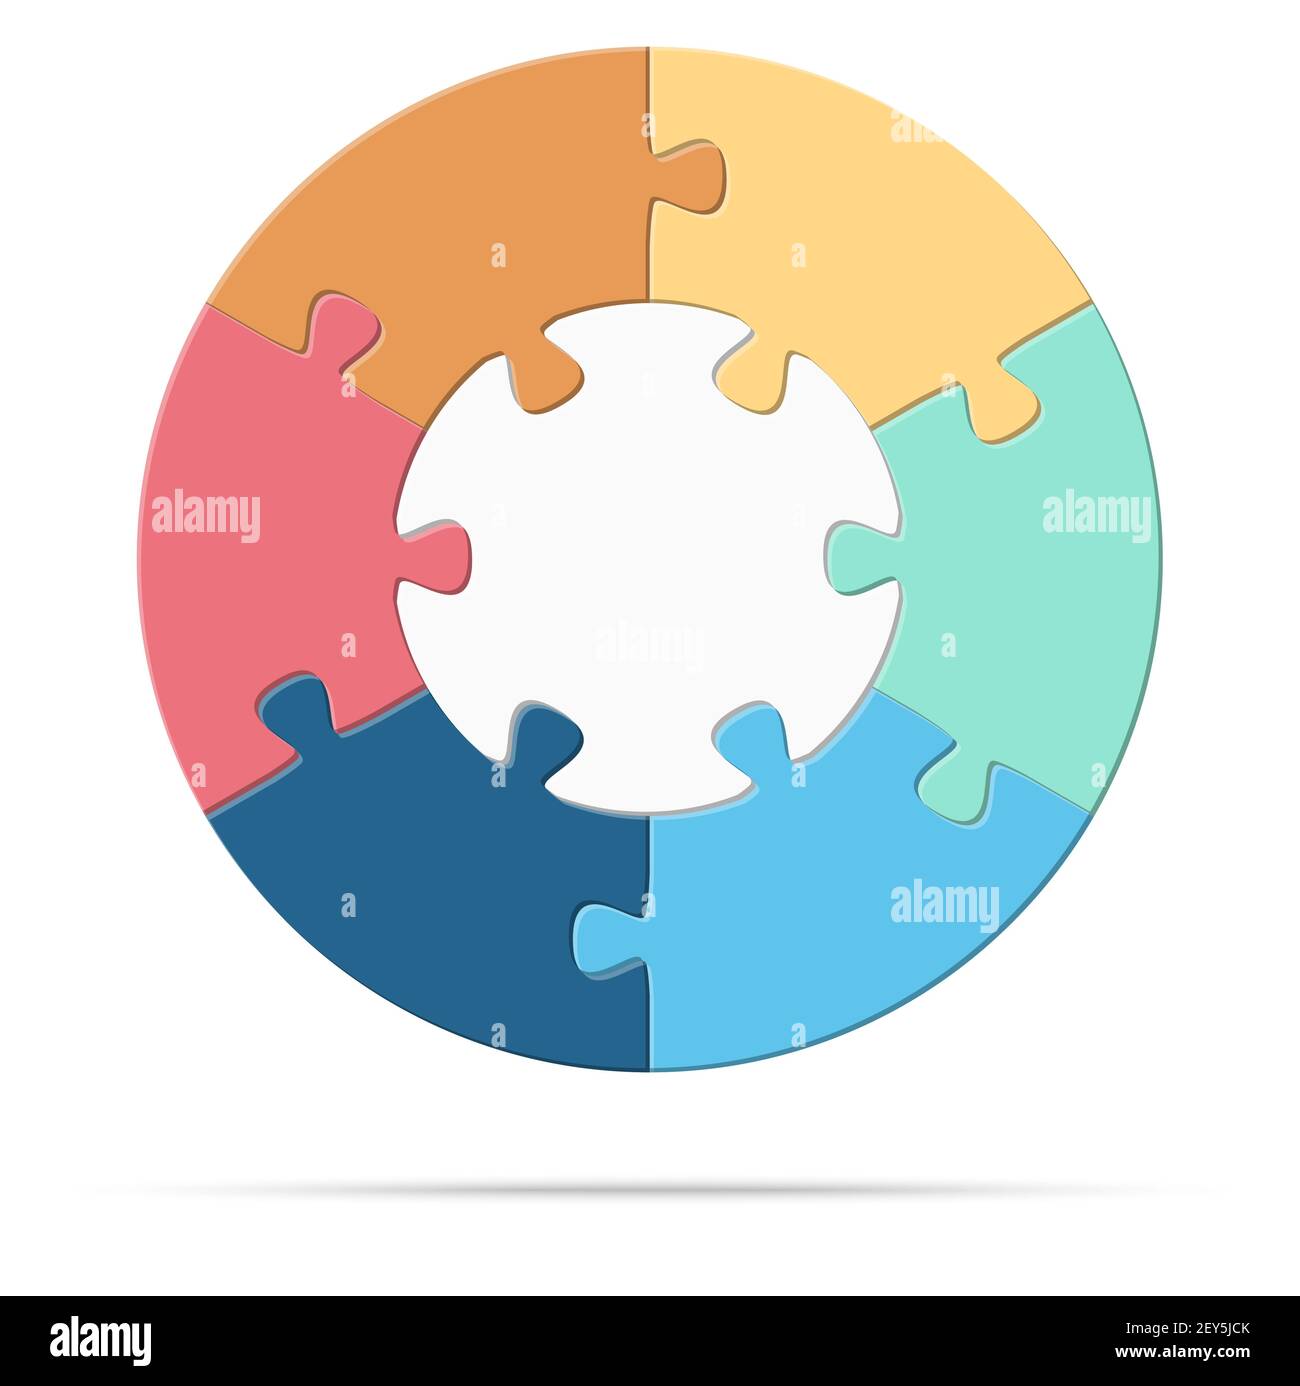 eps Vektor Illustration von runden farbigen Puzzle symbolisieren Zusammenarbeit oder Teamwork-Prozess mit weißer Basis, sechs Optionen Idee Stock Vektor